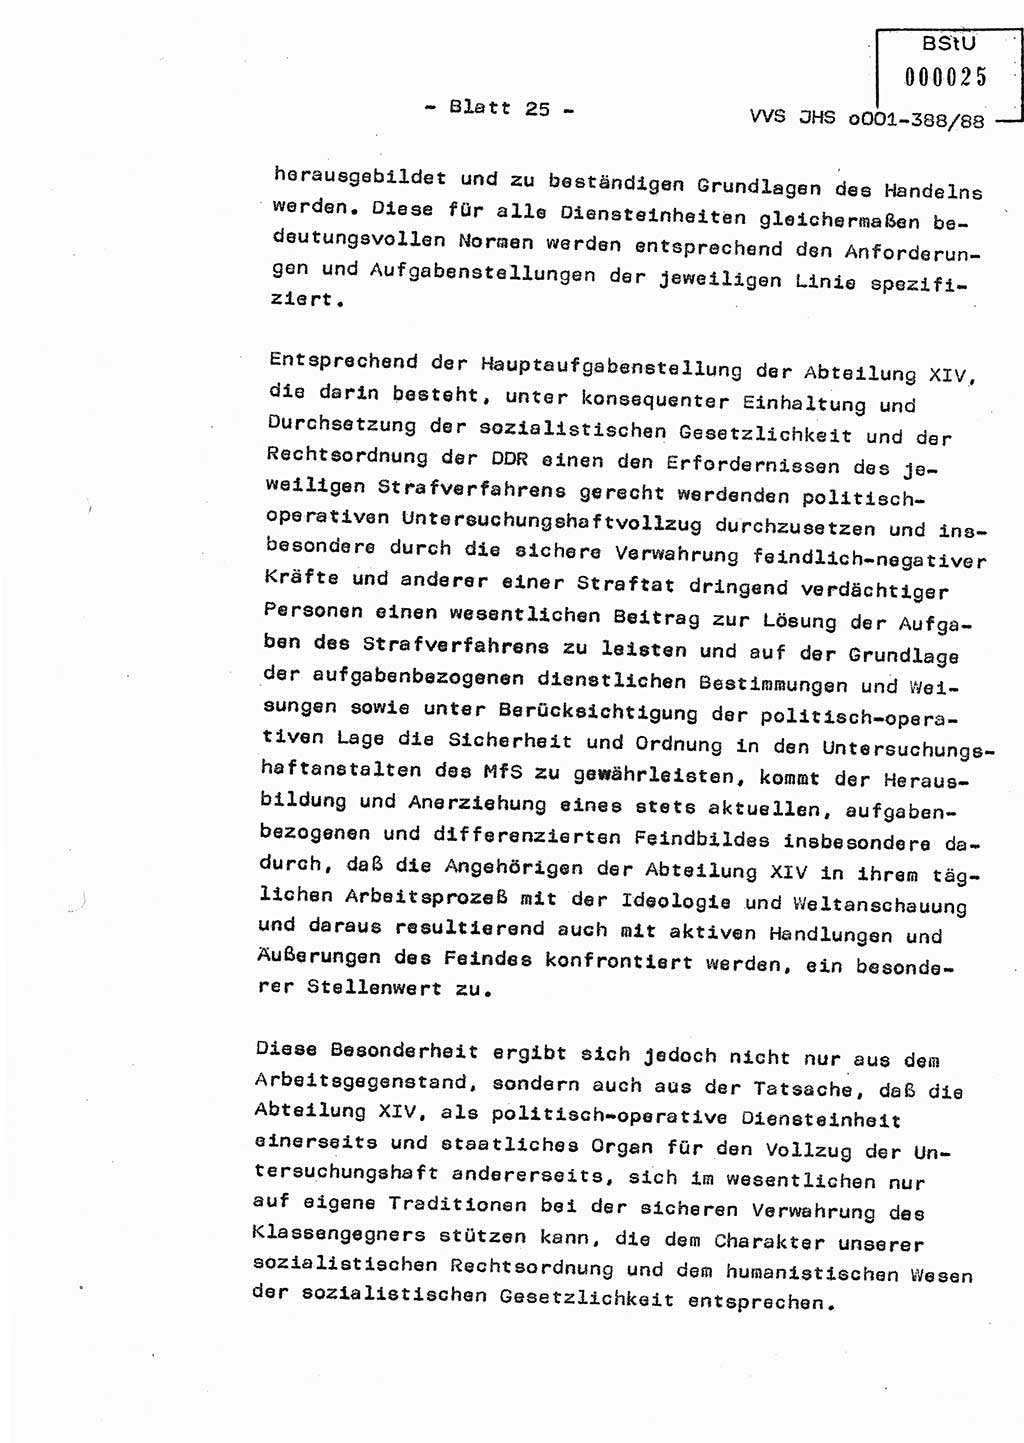 Diplomarbeit Hauptmann Heinz Brixel (Abt. ⅩⅣ), Ministerium für Staatssicherheit (MfS) [Deutsche Demokratische Republik (DDR)], Juristische Hochschule (JHS), Vertrauliche Verschlußsache (VVS) o001-388/88, Potsdam 1988, Blatt 25 (Dipl.-Arb. MfS DDR JHS VVS o001-388/88 1988, Bl. 25)